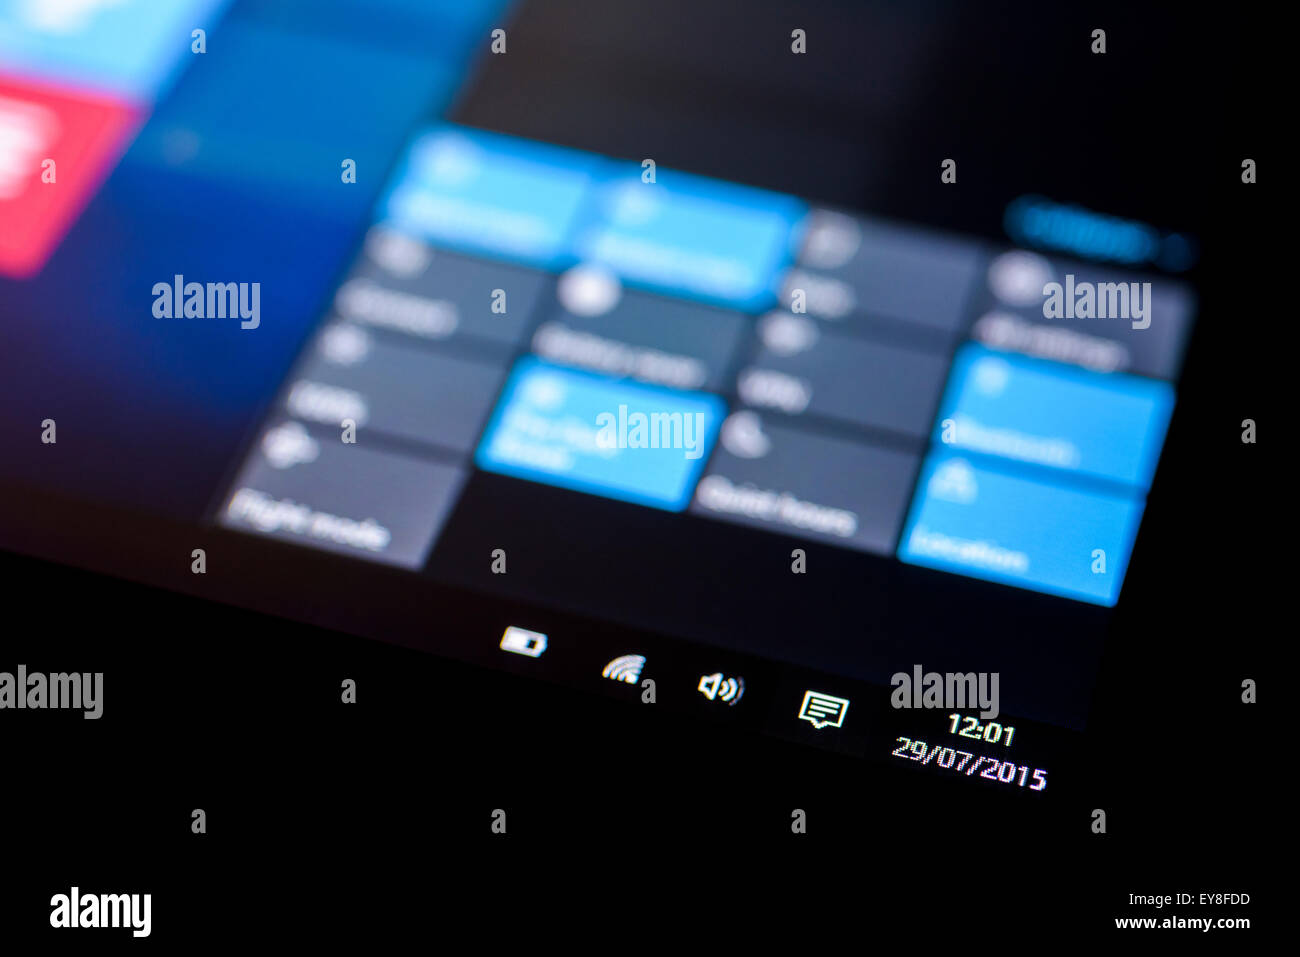 Système d'exploitation Microsoft Windows 10 sur un écran tactile Tablet en mode tablette montrant la date de lancement 29 juillet 2015. Banque D'Images